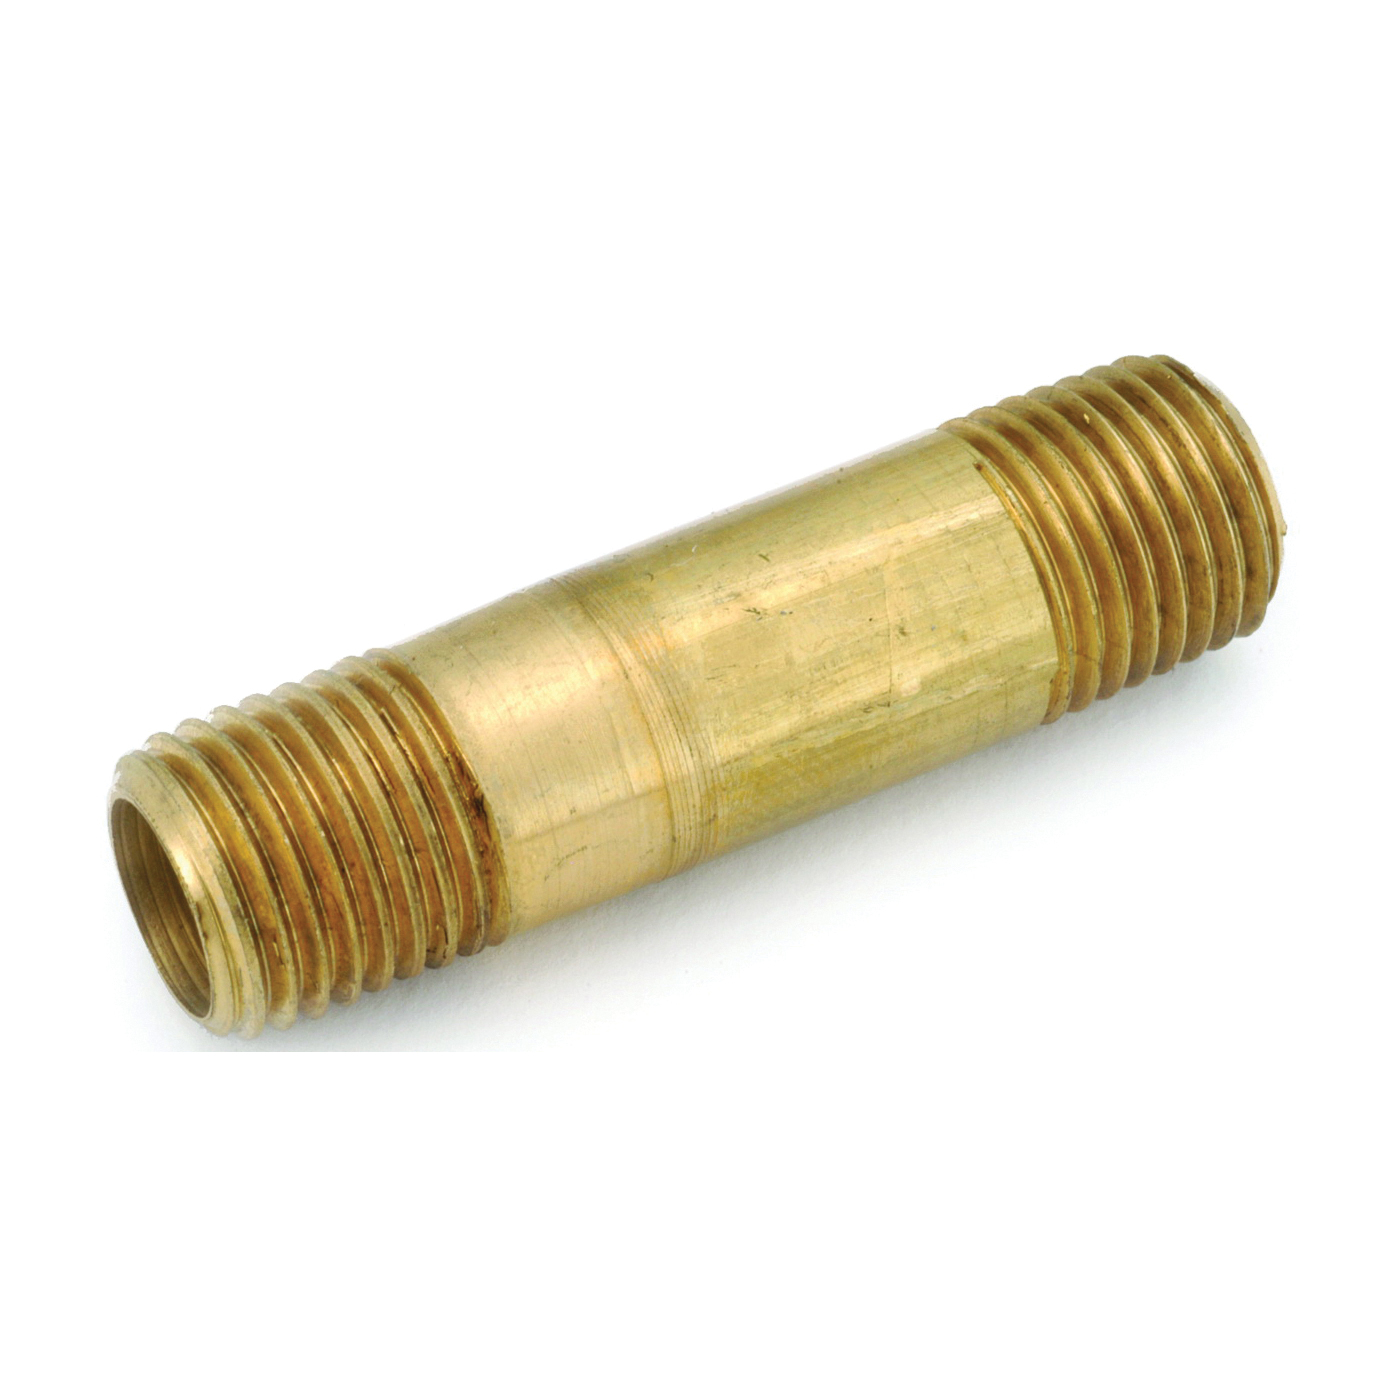 736113-0240 Pipe Nipple, 1/8 in, NPT, Brass, 2-1/2 in L